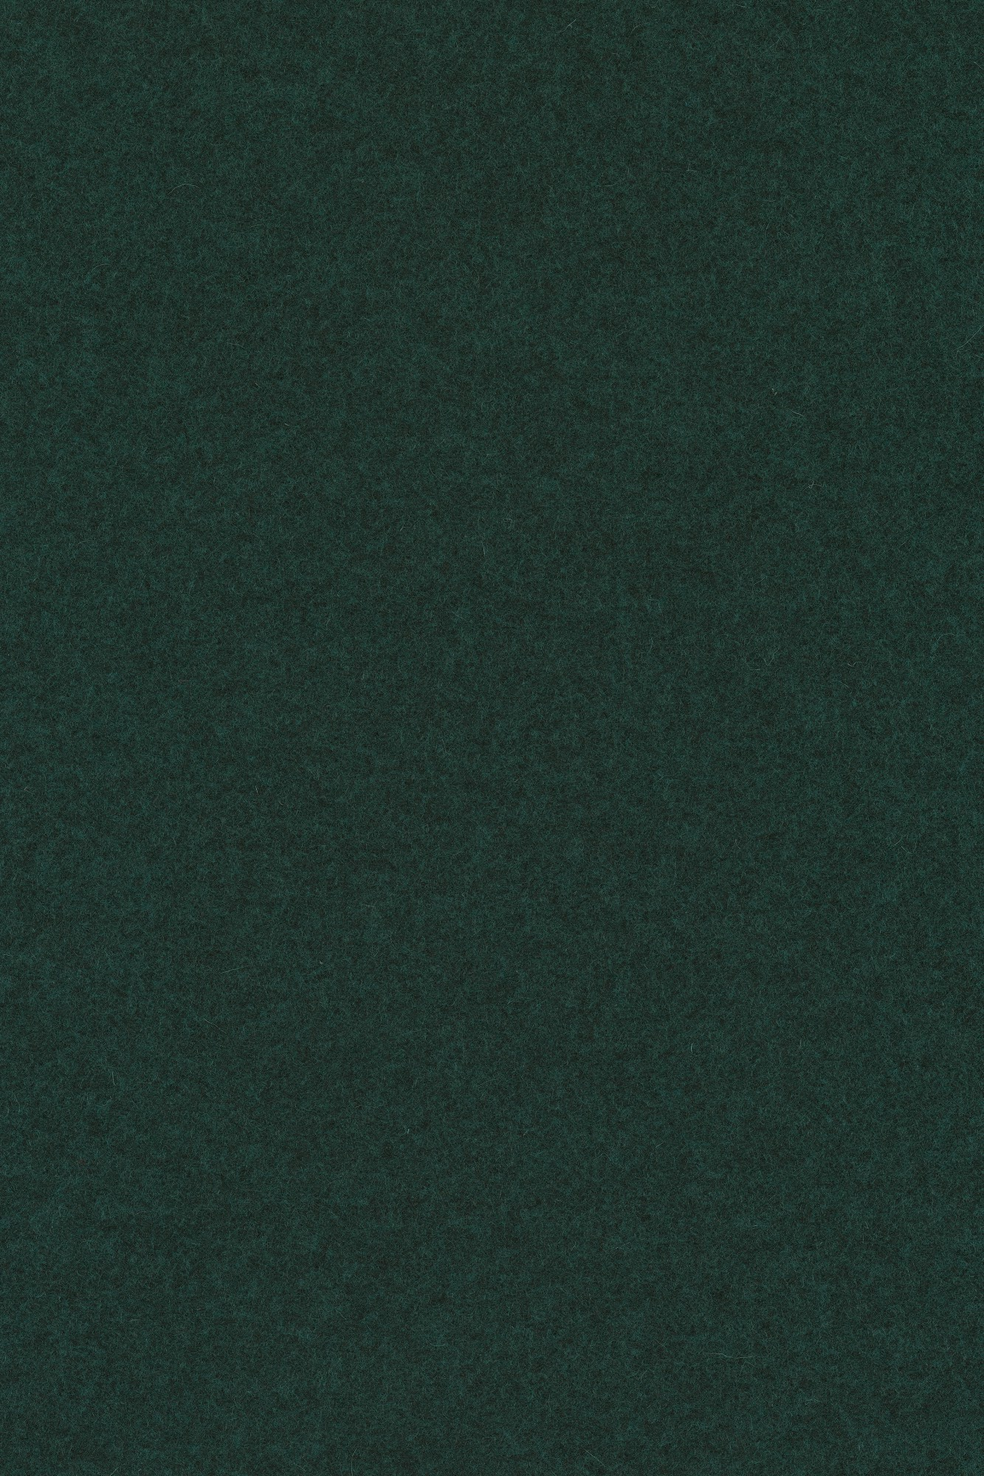 Fabric sample Divina Melange 3 871 green